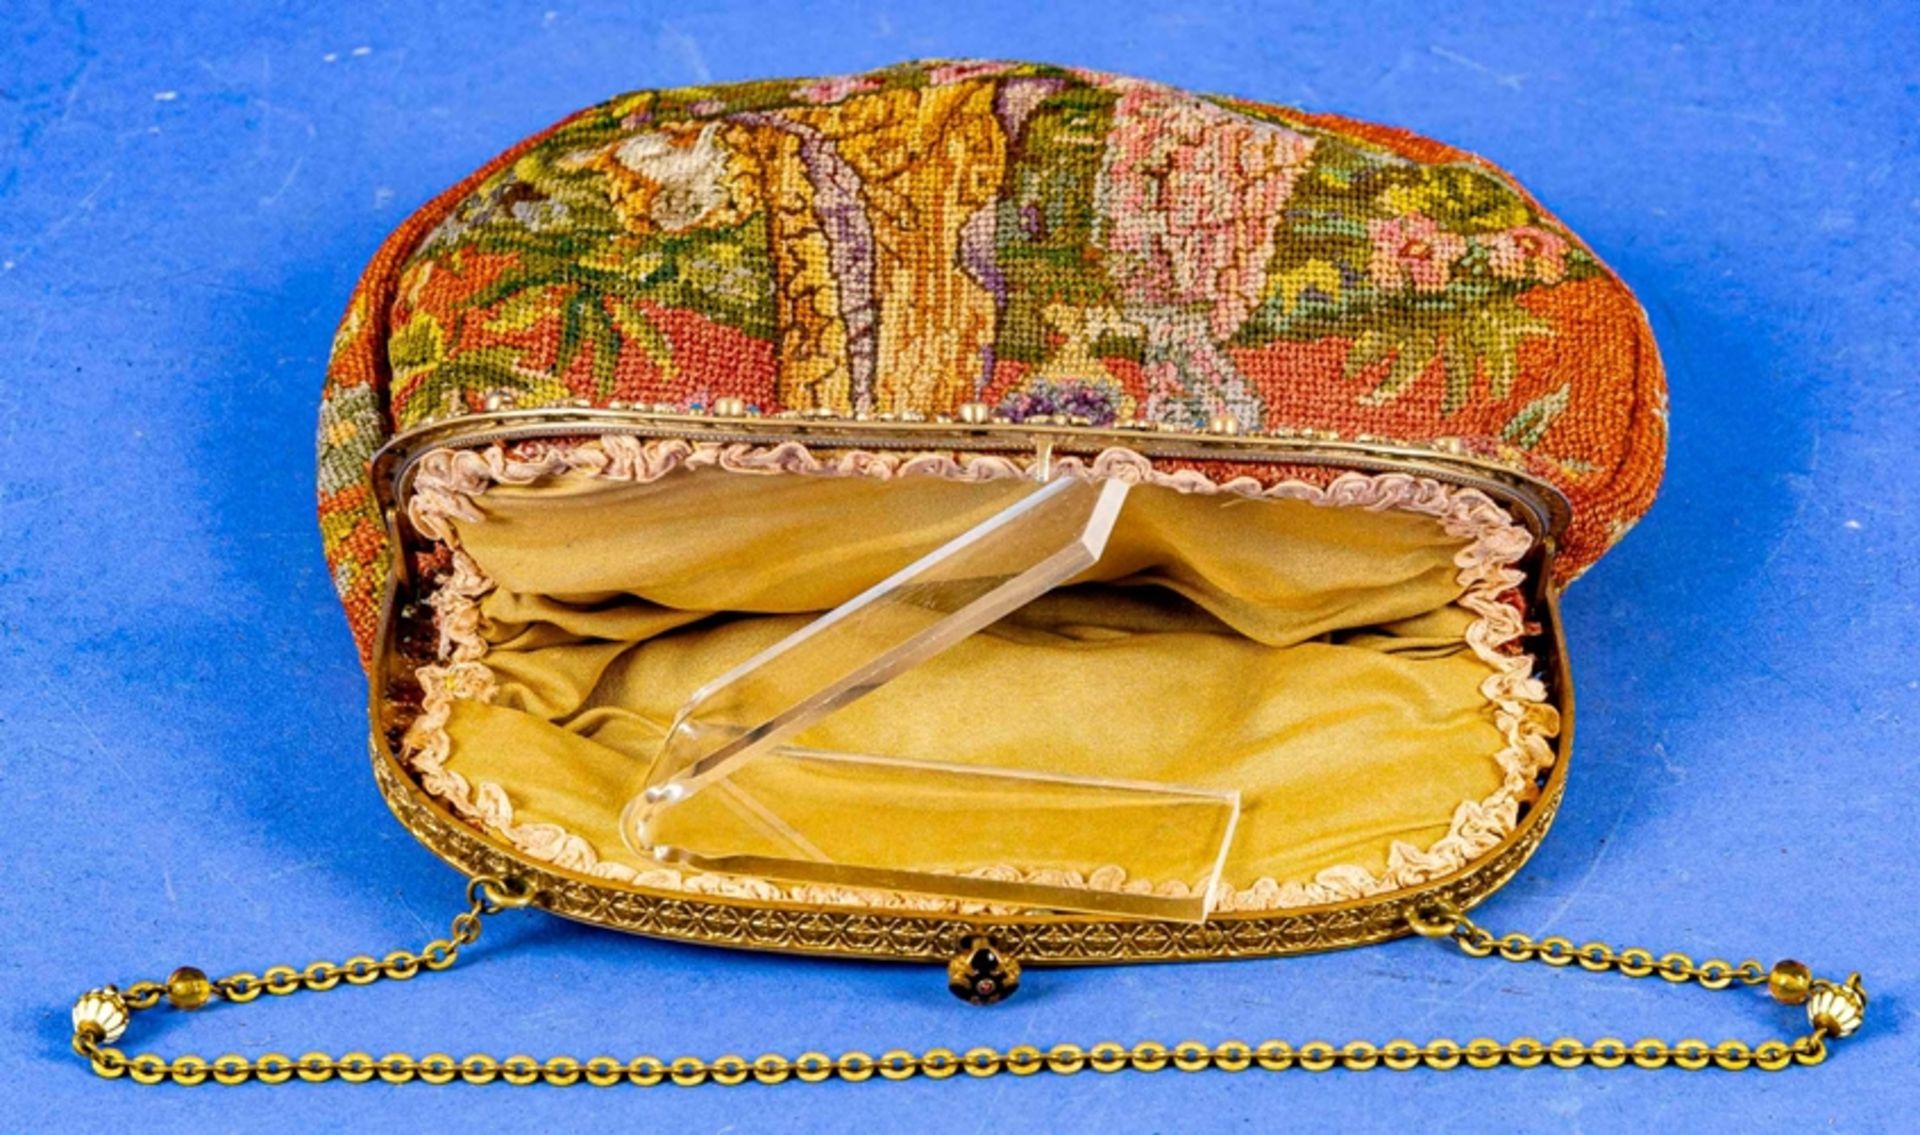 Antike Handtasche mit polychromer, filigraner Gobelin-Stickerei, die vergoldete Metall-Montur aufwä - Image 5 of 8